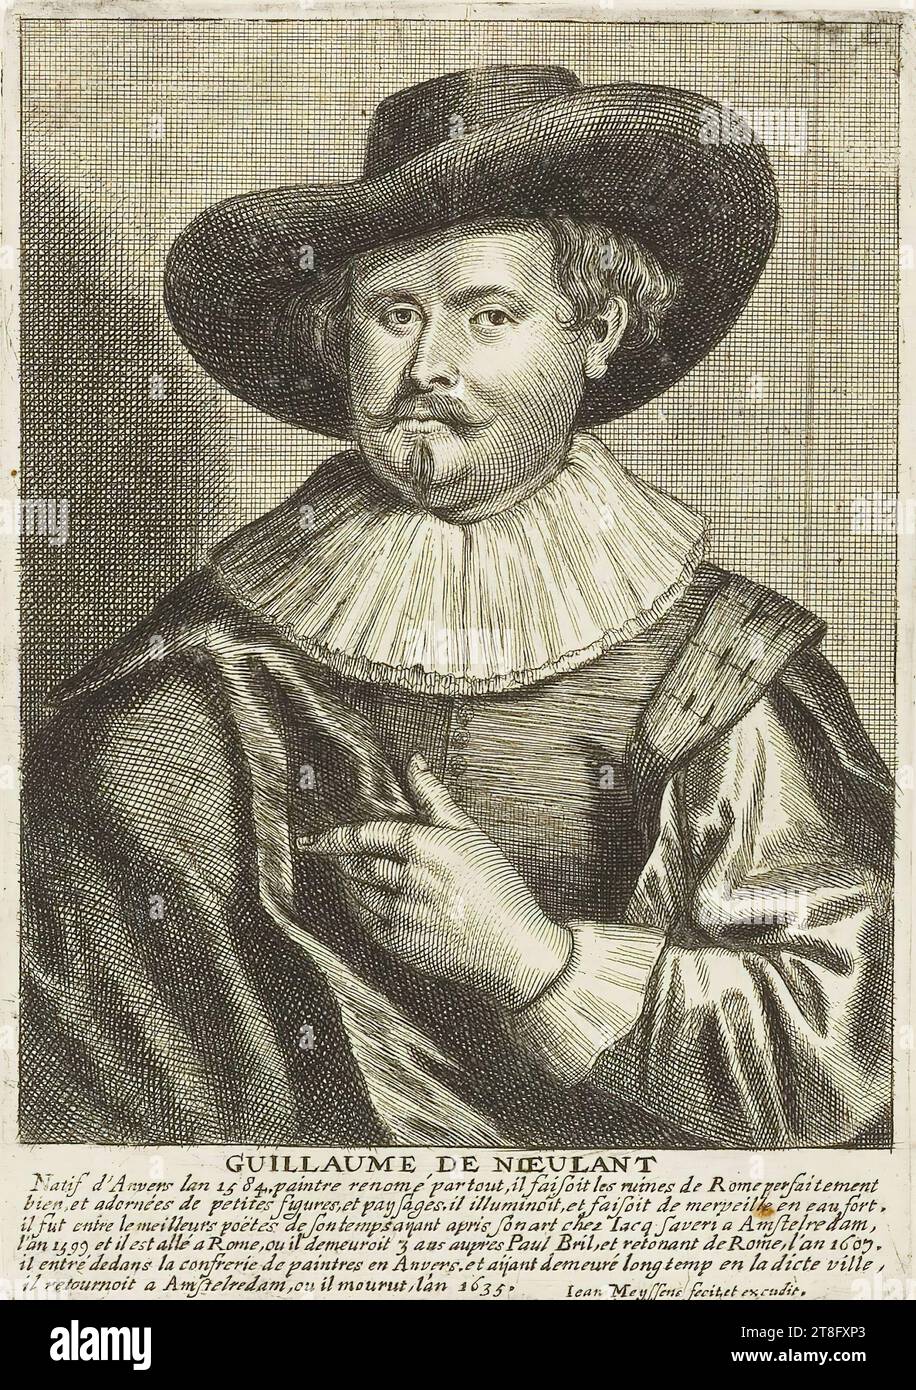 GUILLAUME DE NIEULANT, gebürtiger Antwerpen im Jahre 1584, Maler überall bekannt, malte die Ruinen Roms perfekt, gut, geschmückt mit kleinen Figuren und Landschaften, die er erleuchtete, und er tat Wunder in starkem Wasser, er war zwischen den besten Dichtern seiner Zeit, nachdem er seine Kunst von Jacq Saveri in Amstelredam im Jahre 1599 gelernt hatte, und er ging nach Rom, wo er drei Jahre bei Paul Brilie blieb. und nach seiner Rückkehr aus Rom im Jahre 1607 trat er in die Malerbrüderschaft in Antwerpen ein und kehrte nach Amstelredam zurück Stockfoto